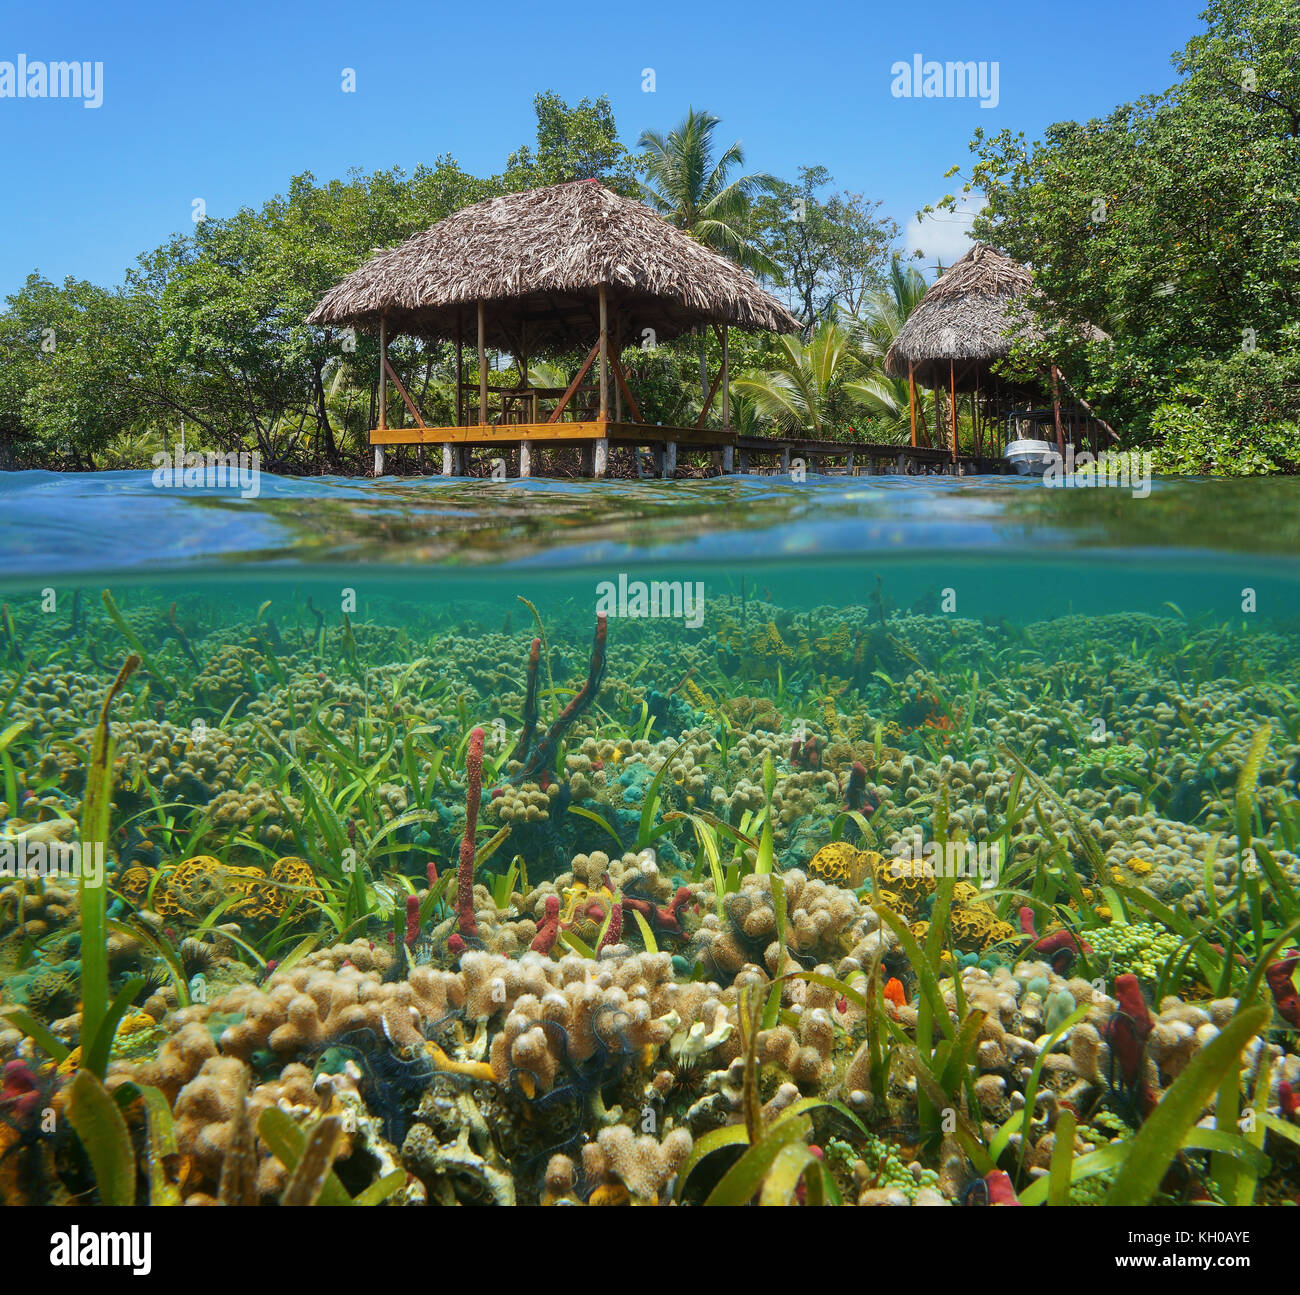 Un refuge tropical de chaume au-dessus de l'eau avec un récif de corail coloré sous l'eau, mer des Caraïbes Banque D'Images